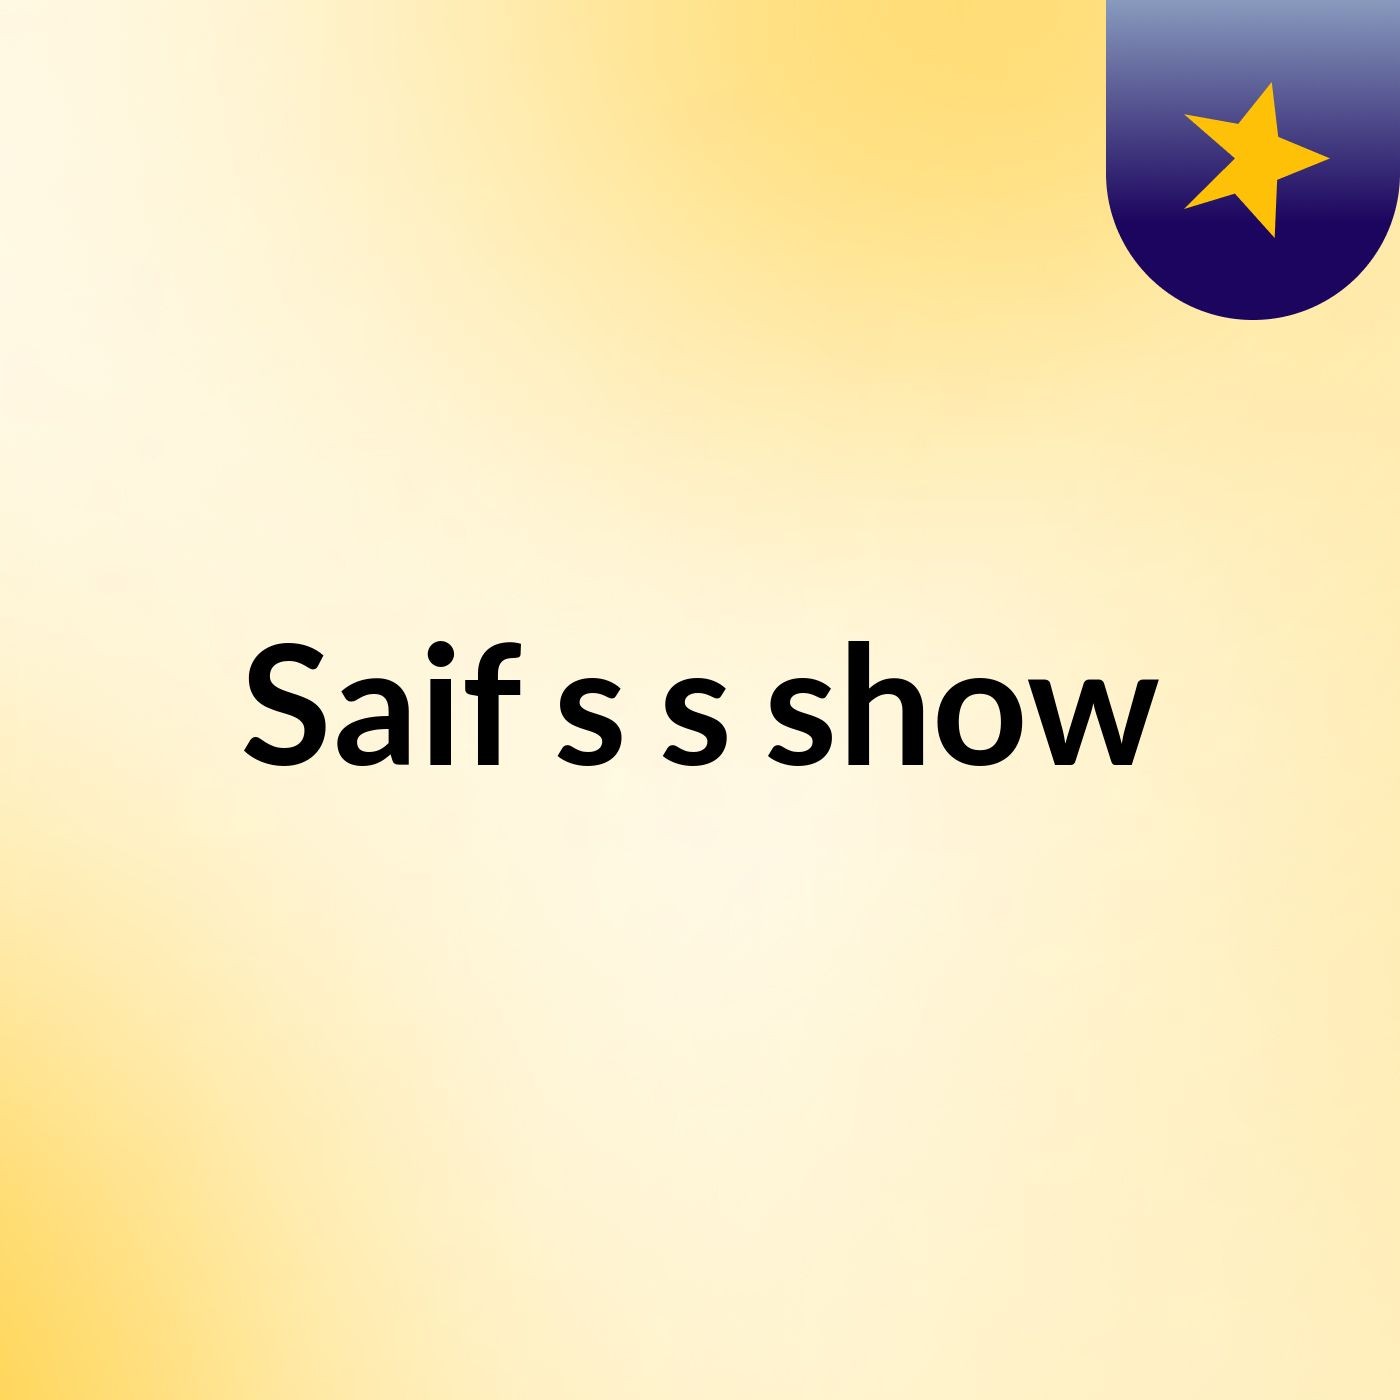 Saif s's show